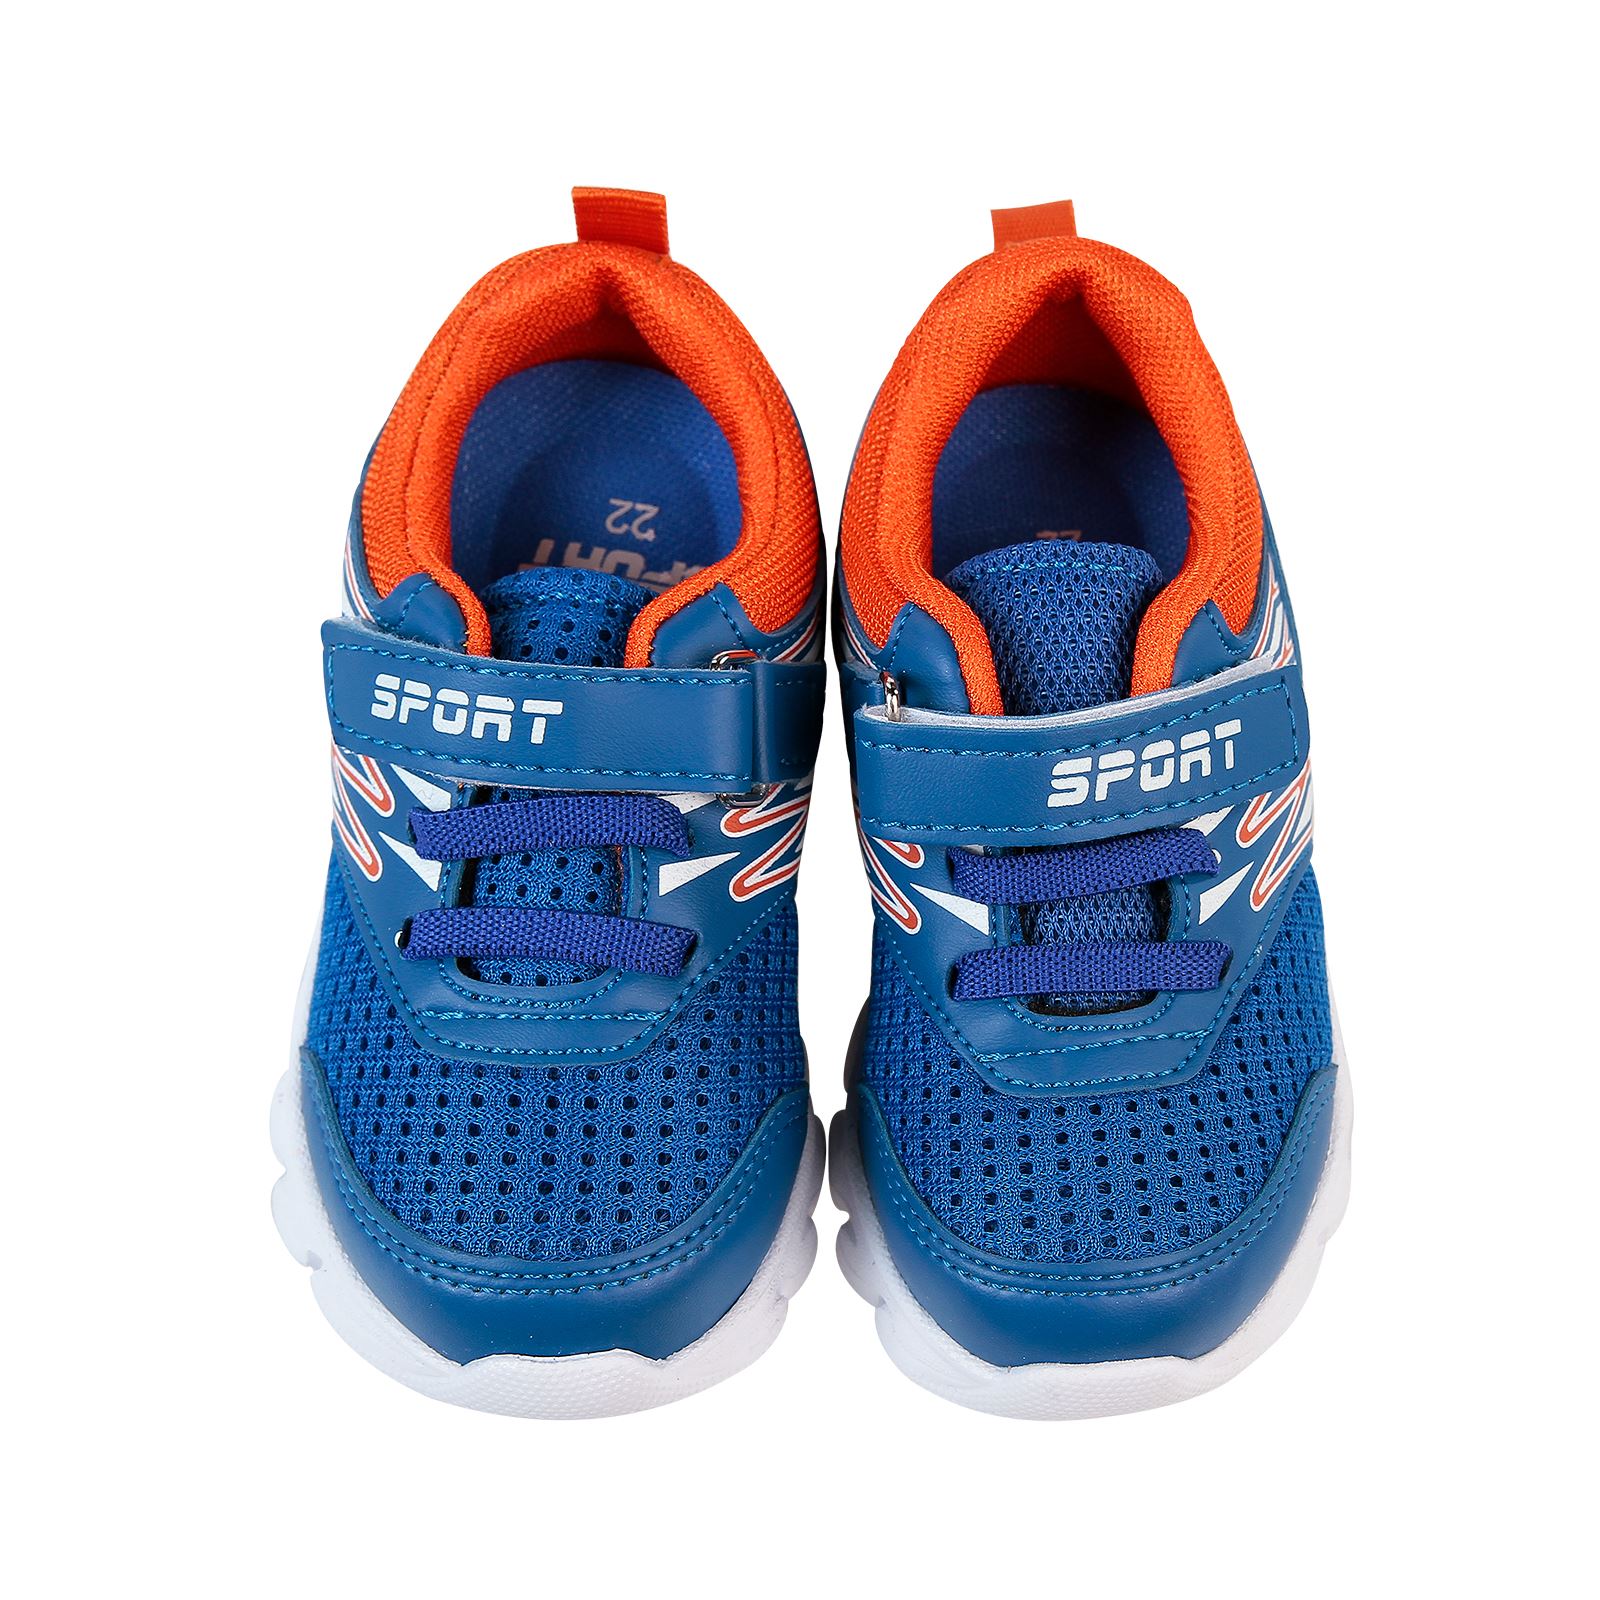 Sport Erkek Çocuk Spor Ayakkabı 22-25 Numara Saks Mavisi